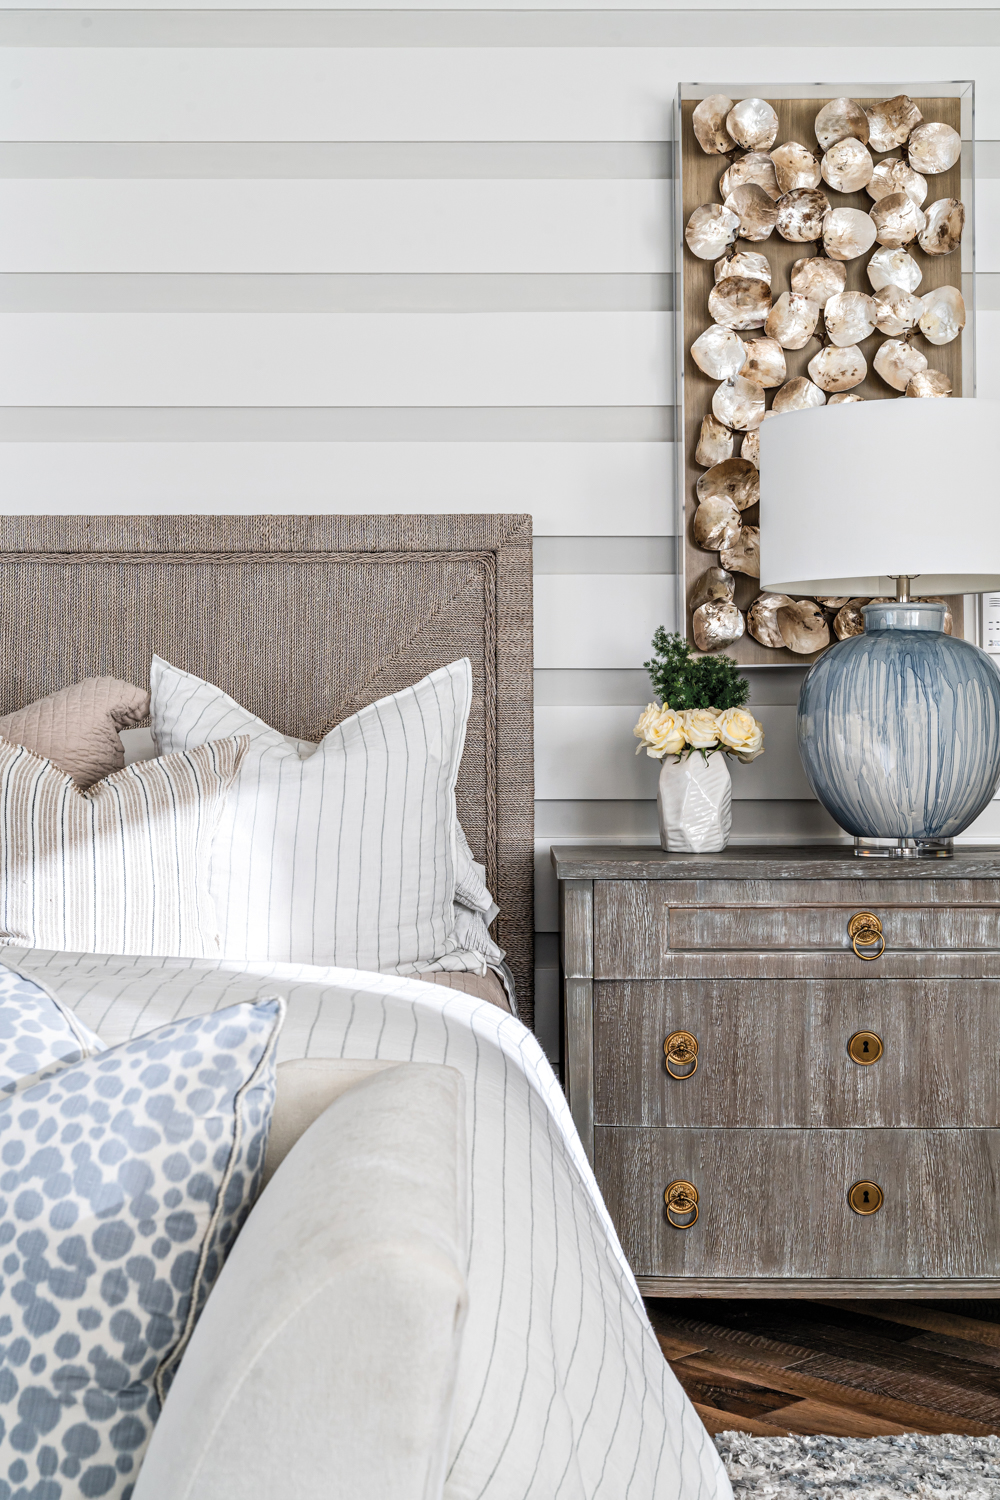 Neutral-toned bedroom vignette and wooden nightstand in Design West showroom